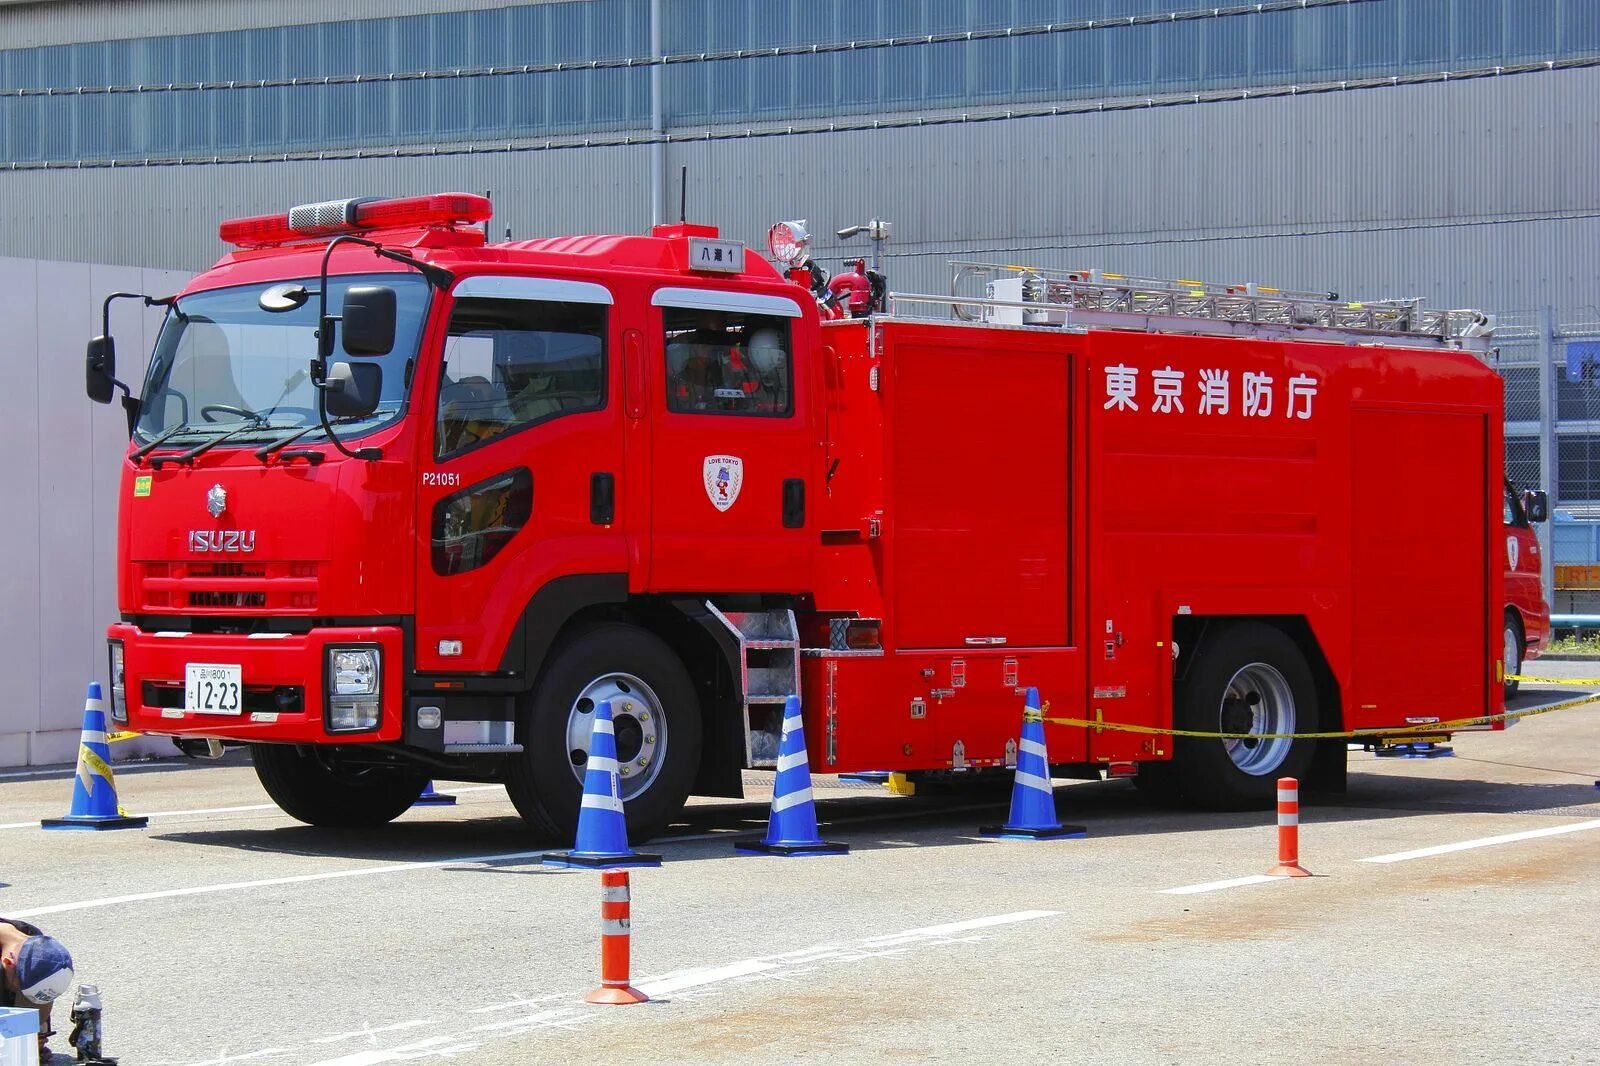 Ар пожарный автомобиль. АПС пожарная машина. АПС пожарный автомобиль. Пожарная машина Исузу. Пожарная машинка (20 см) Fire-Fighting vehicle bp738.